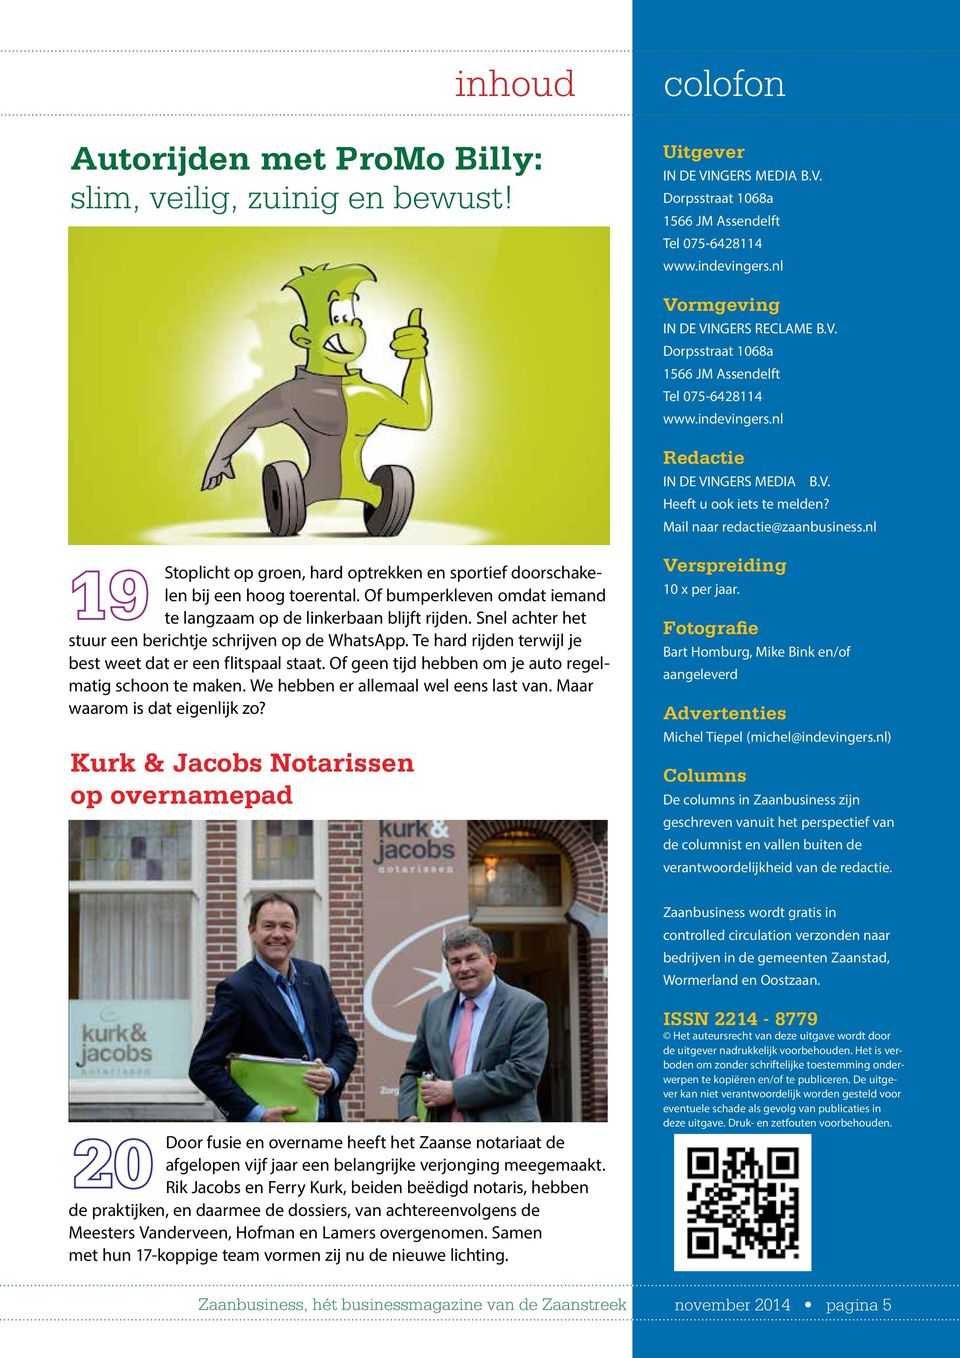 Mail naar redactie@zaanbusiness.nl Stoplicht op groen, hard optrekken en sportief doorschakelen bij een hoog toerental.